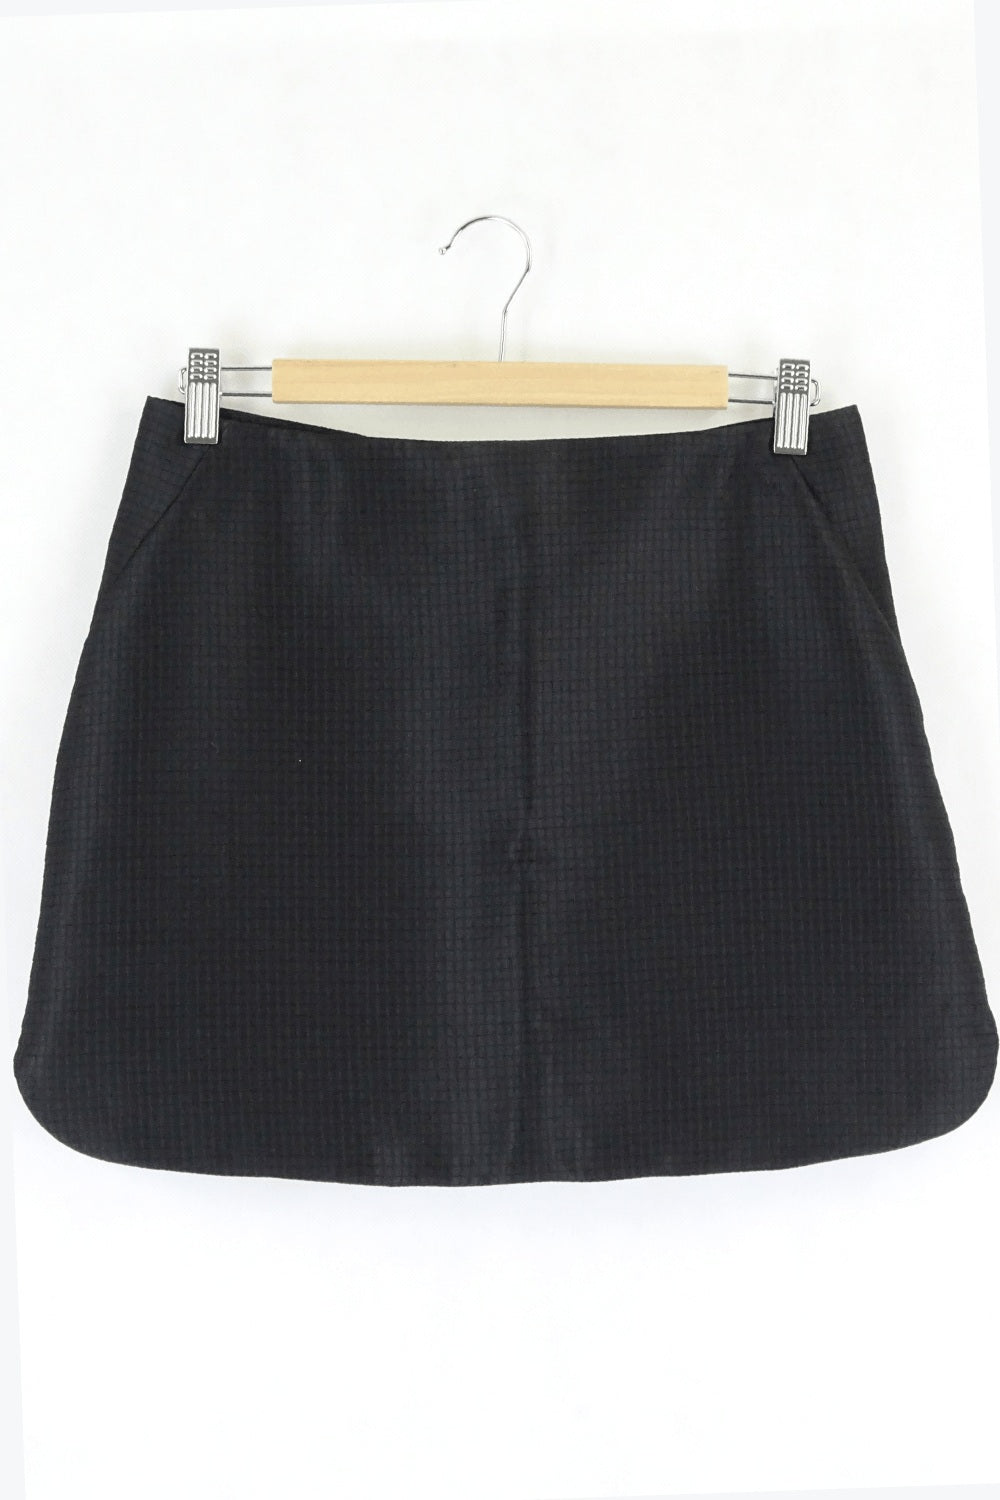 Lulu &amp; Rose Textured Black Mini Skirt S